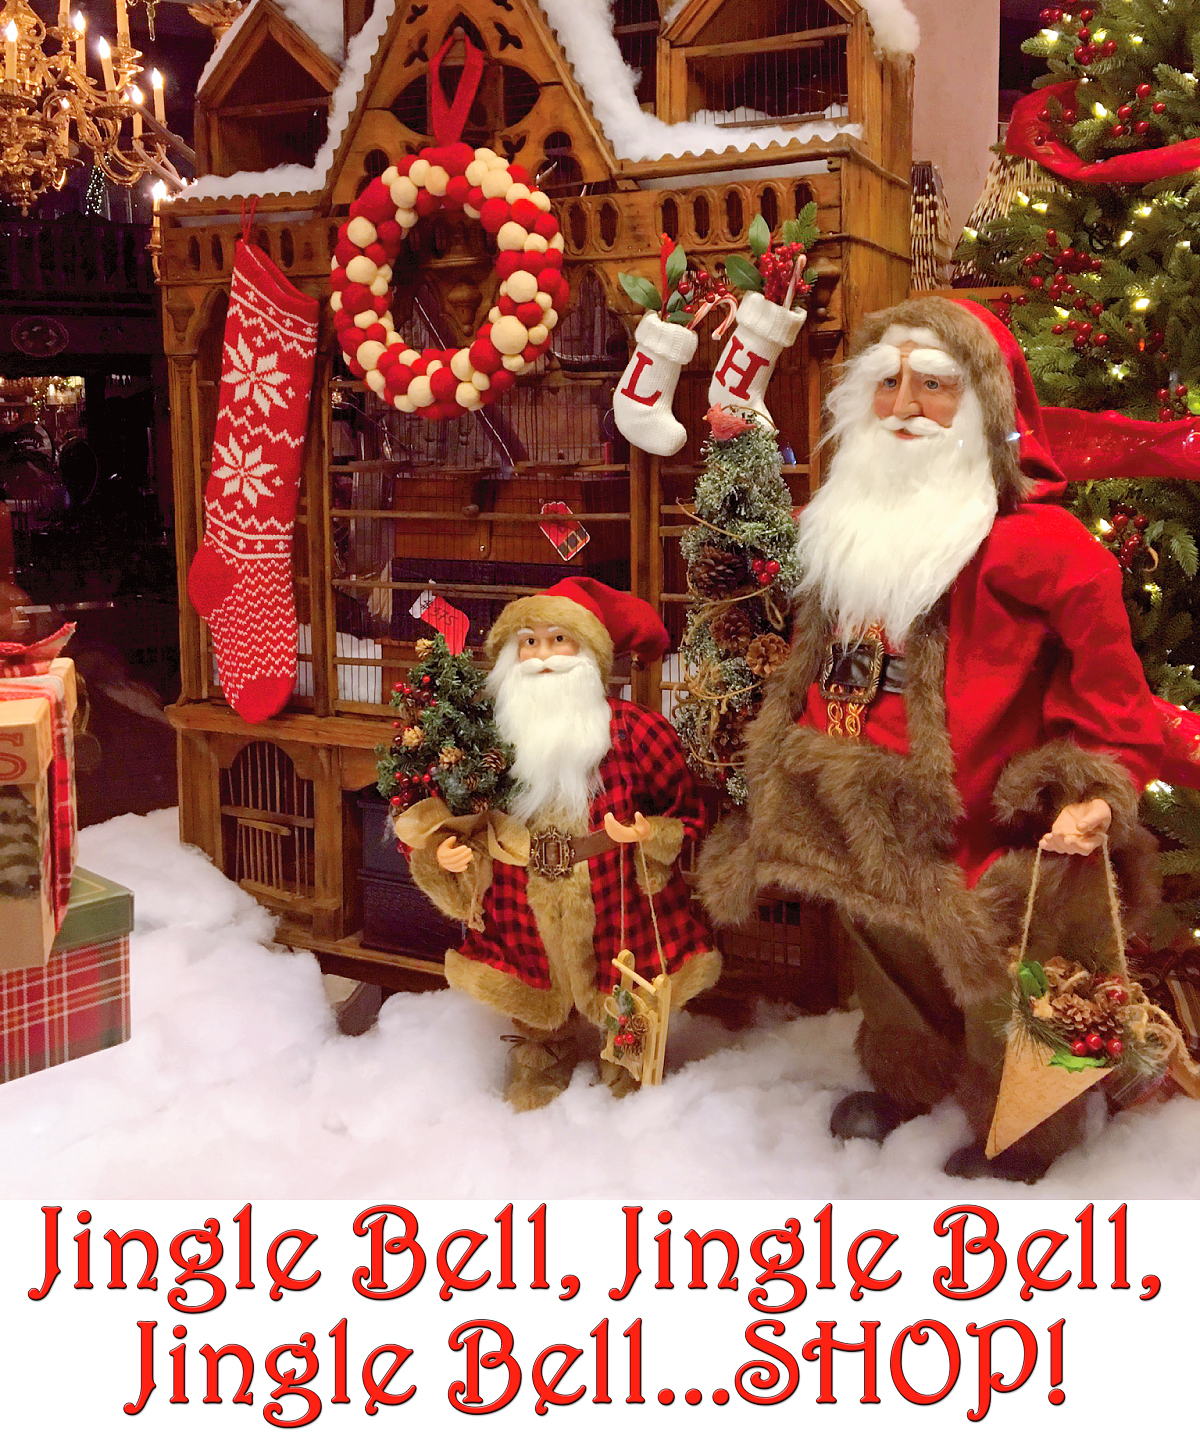 Jingle Bell, Jingle Bell, Jingle Bell...SHOP!